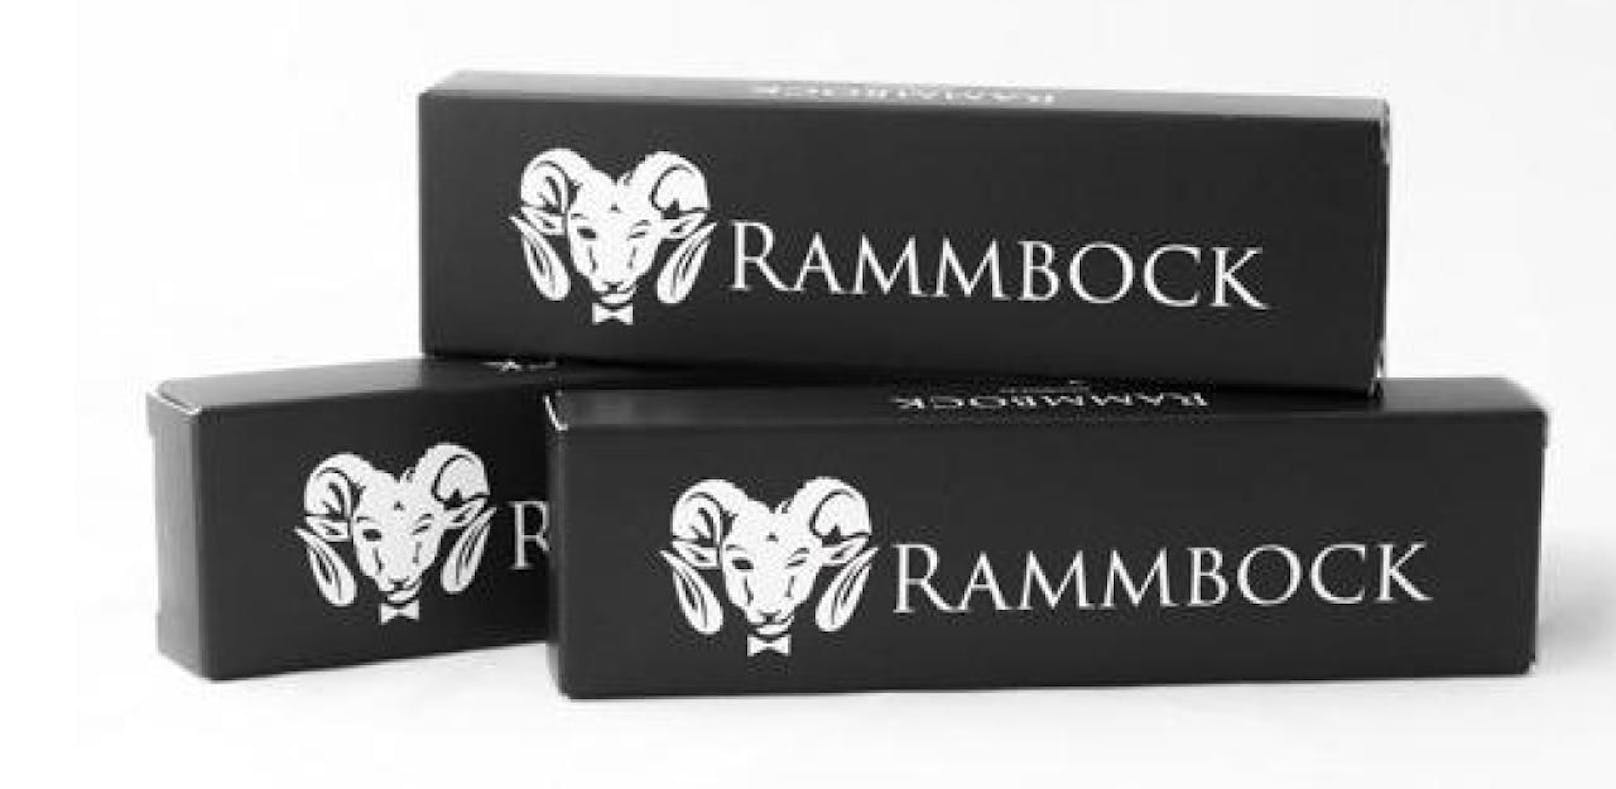 Rammbock: Das Nahrungsergänzungs-Mittel enthält Viagra.